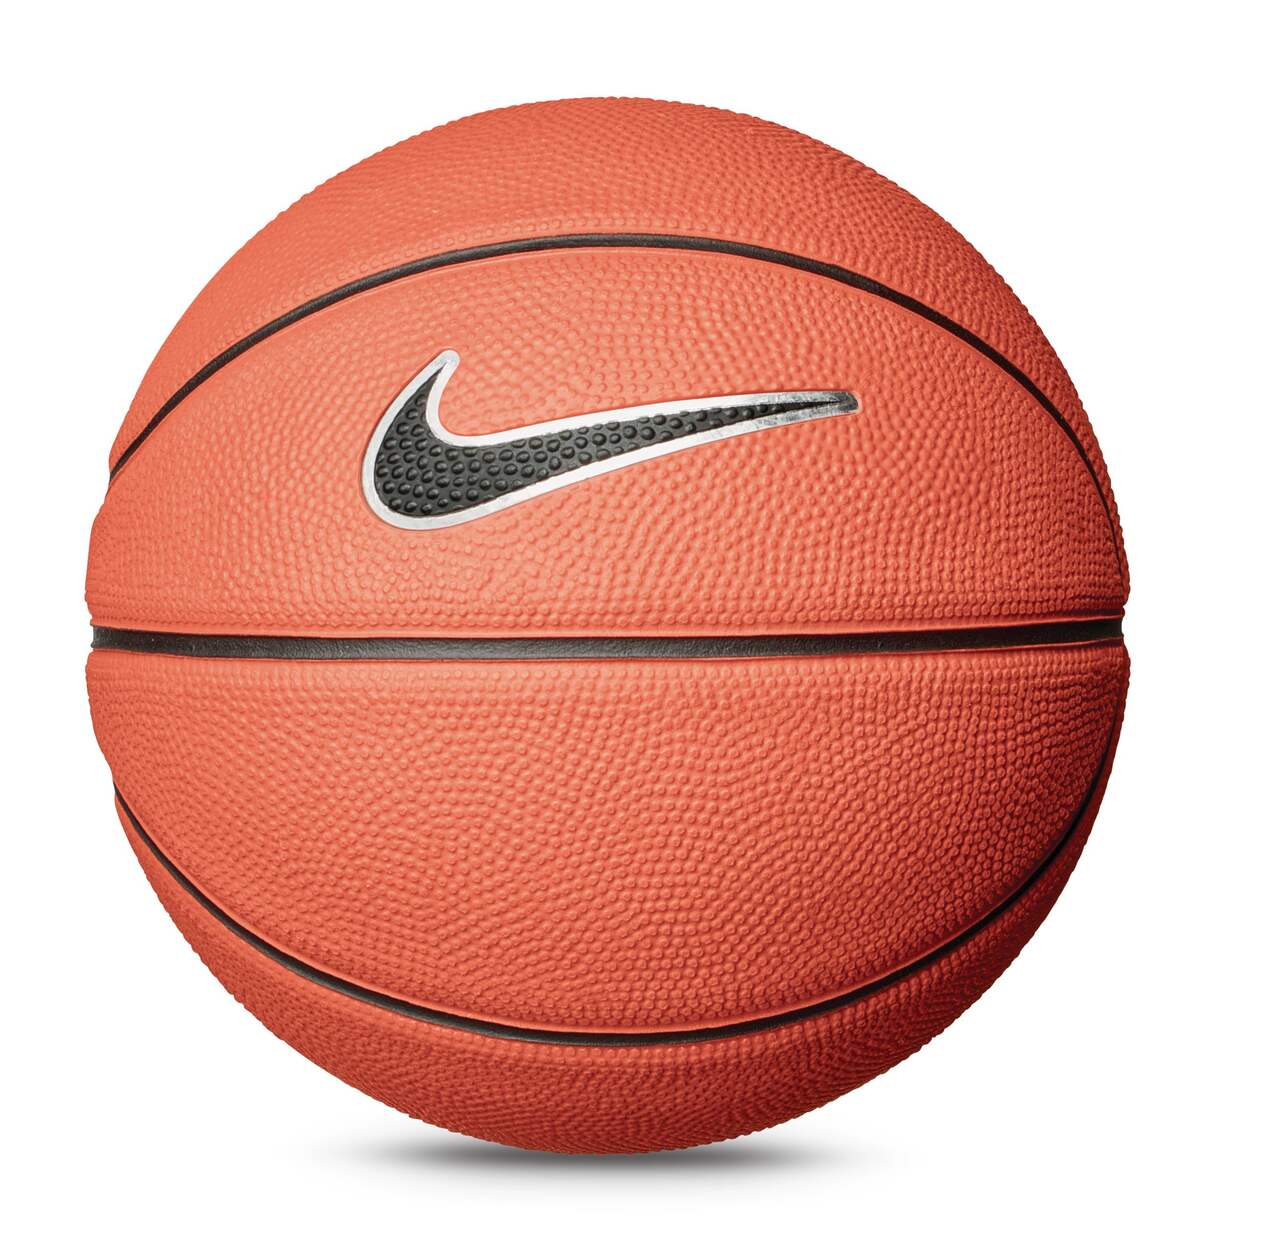 Miniballon de basketball en caoutchouc Nike Skills pour enfants,  intérieur/extérieur, taille 3 (22-1/2 po), ambre/noir/blanc